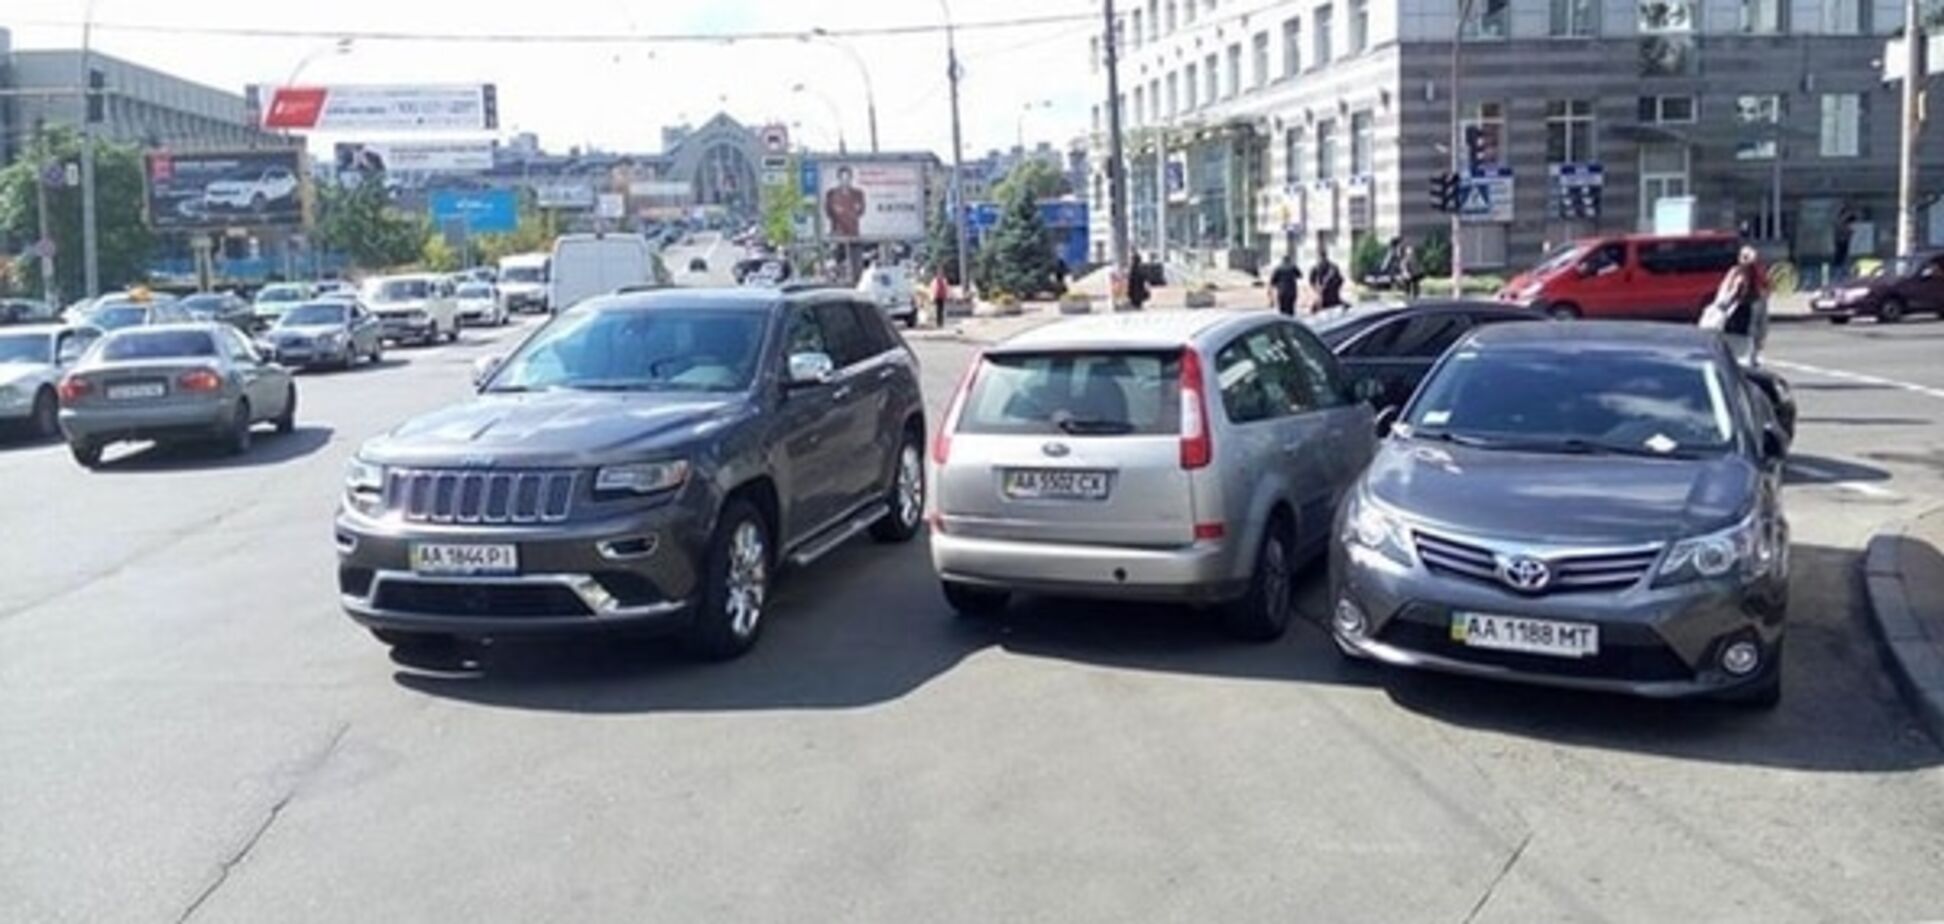 'Супергерої парковки' створили аварійну ситуацію в центрі Києва: фото порушників